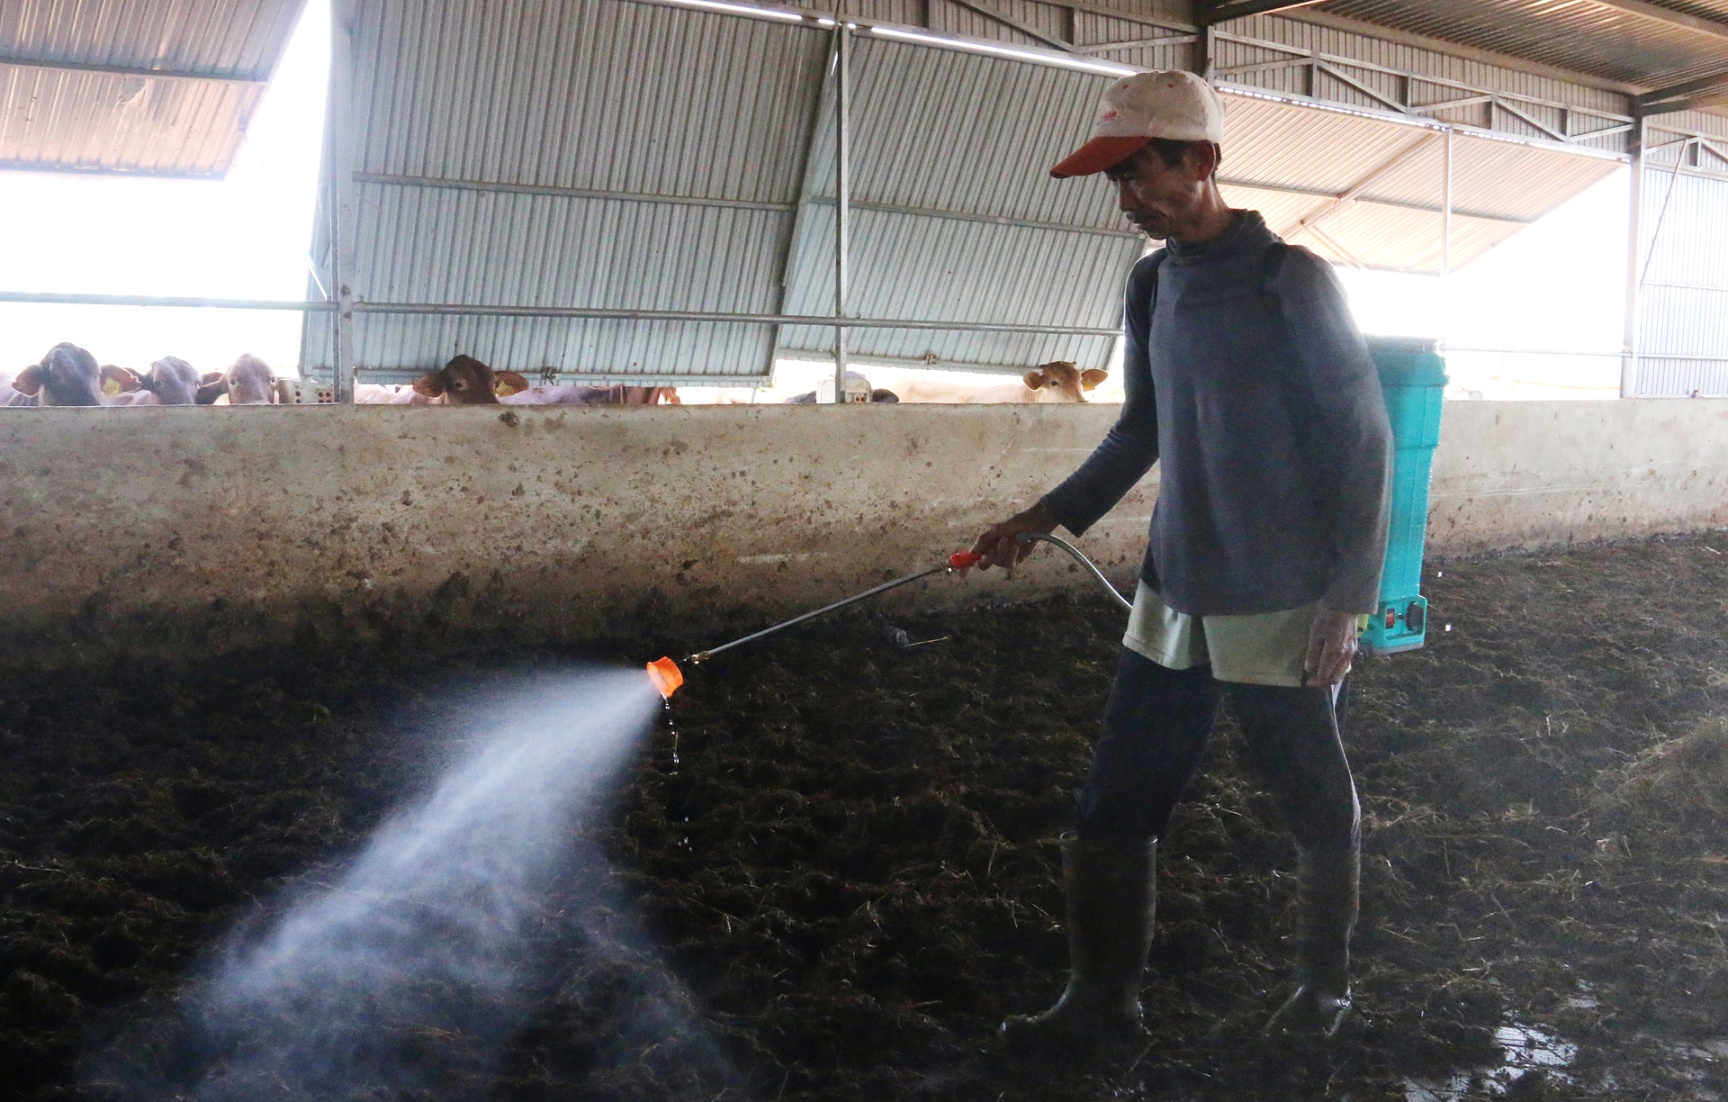 Trang trại bò VietGAP của anh Hiếu tạo công ăn việc làm cho hơn 10 lao động nghèo tại địa phương. Ảnh: Quang Yên.